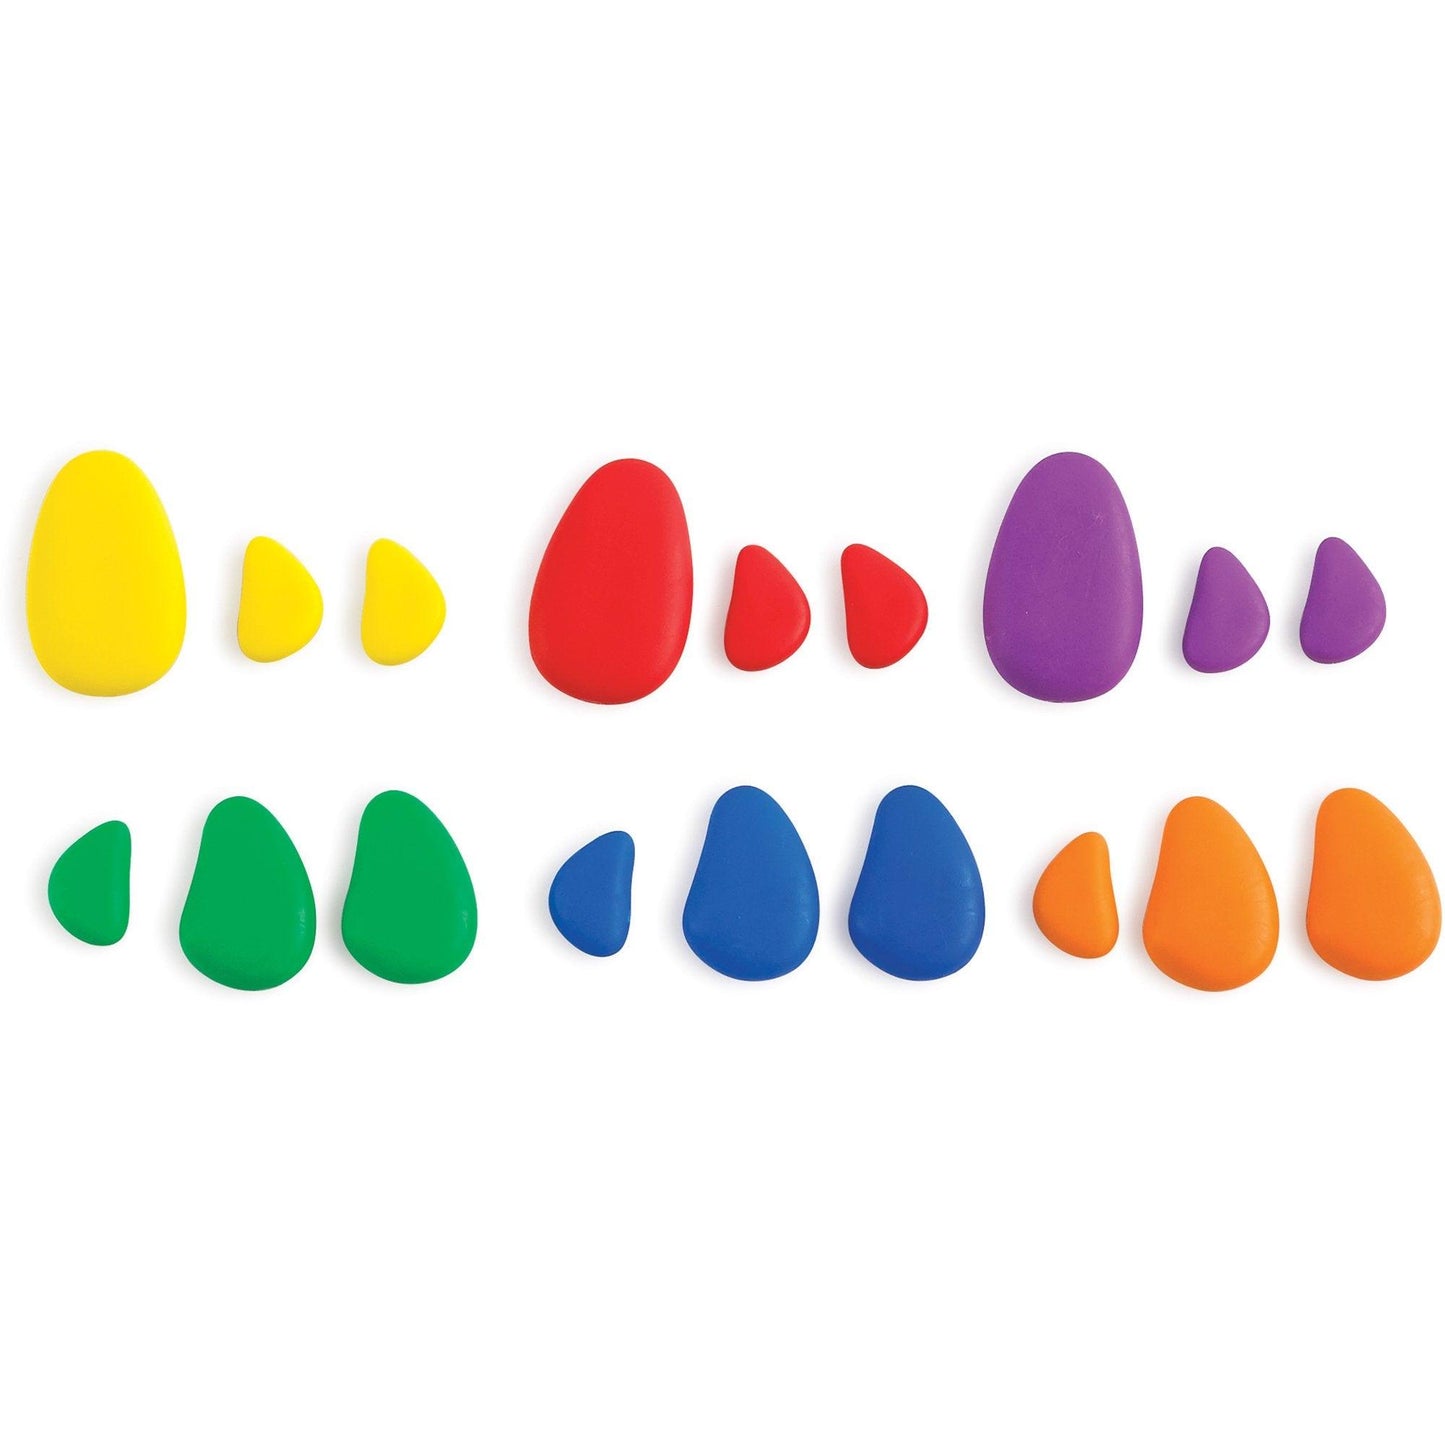 
                  
                    Rainbow Pebbles® Activity Set - Shopedx
                  
                